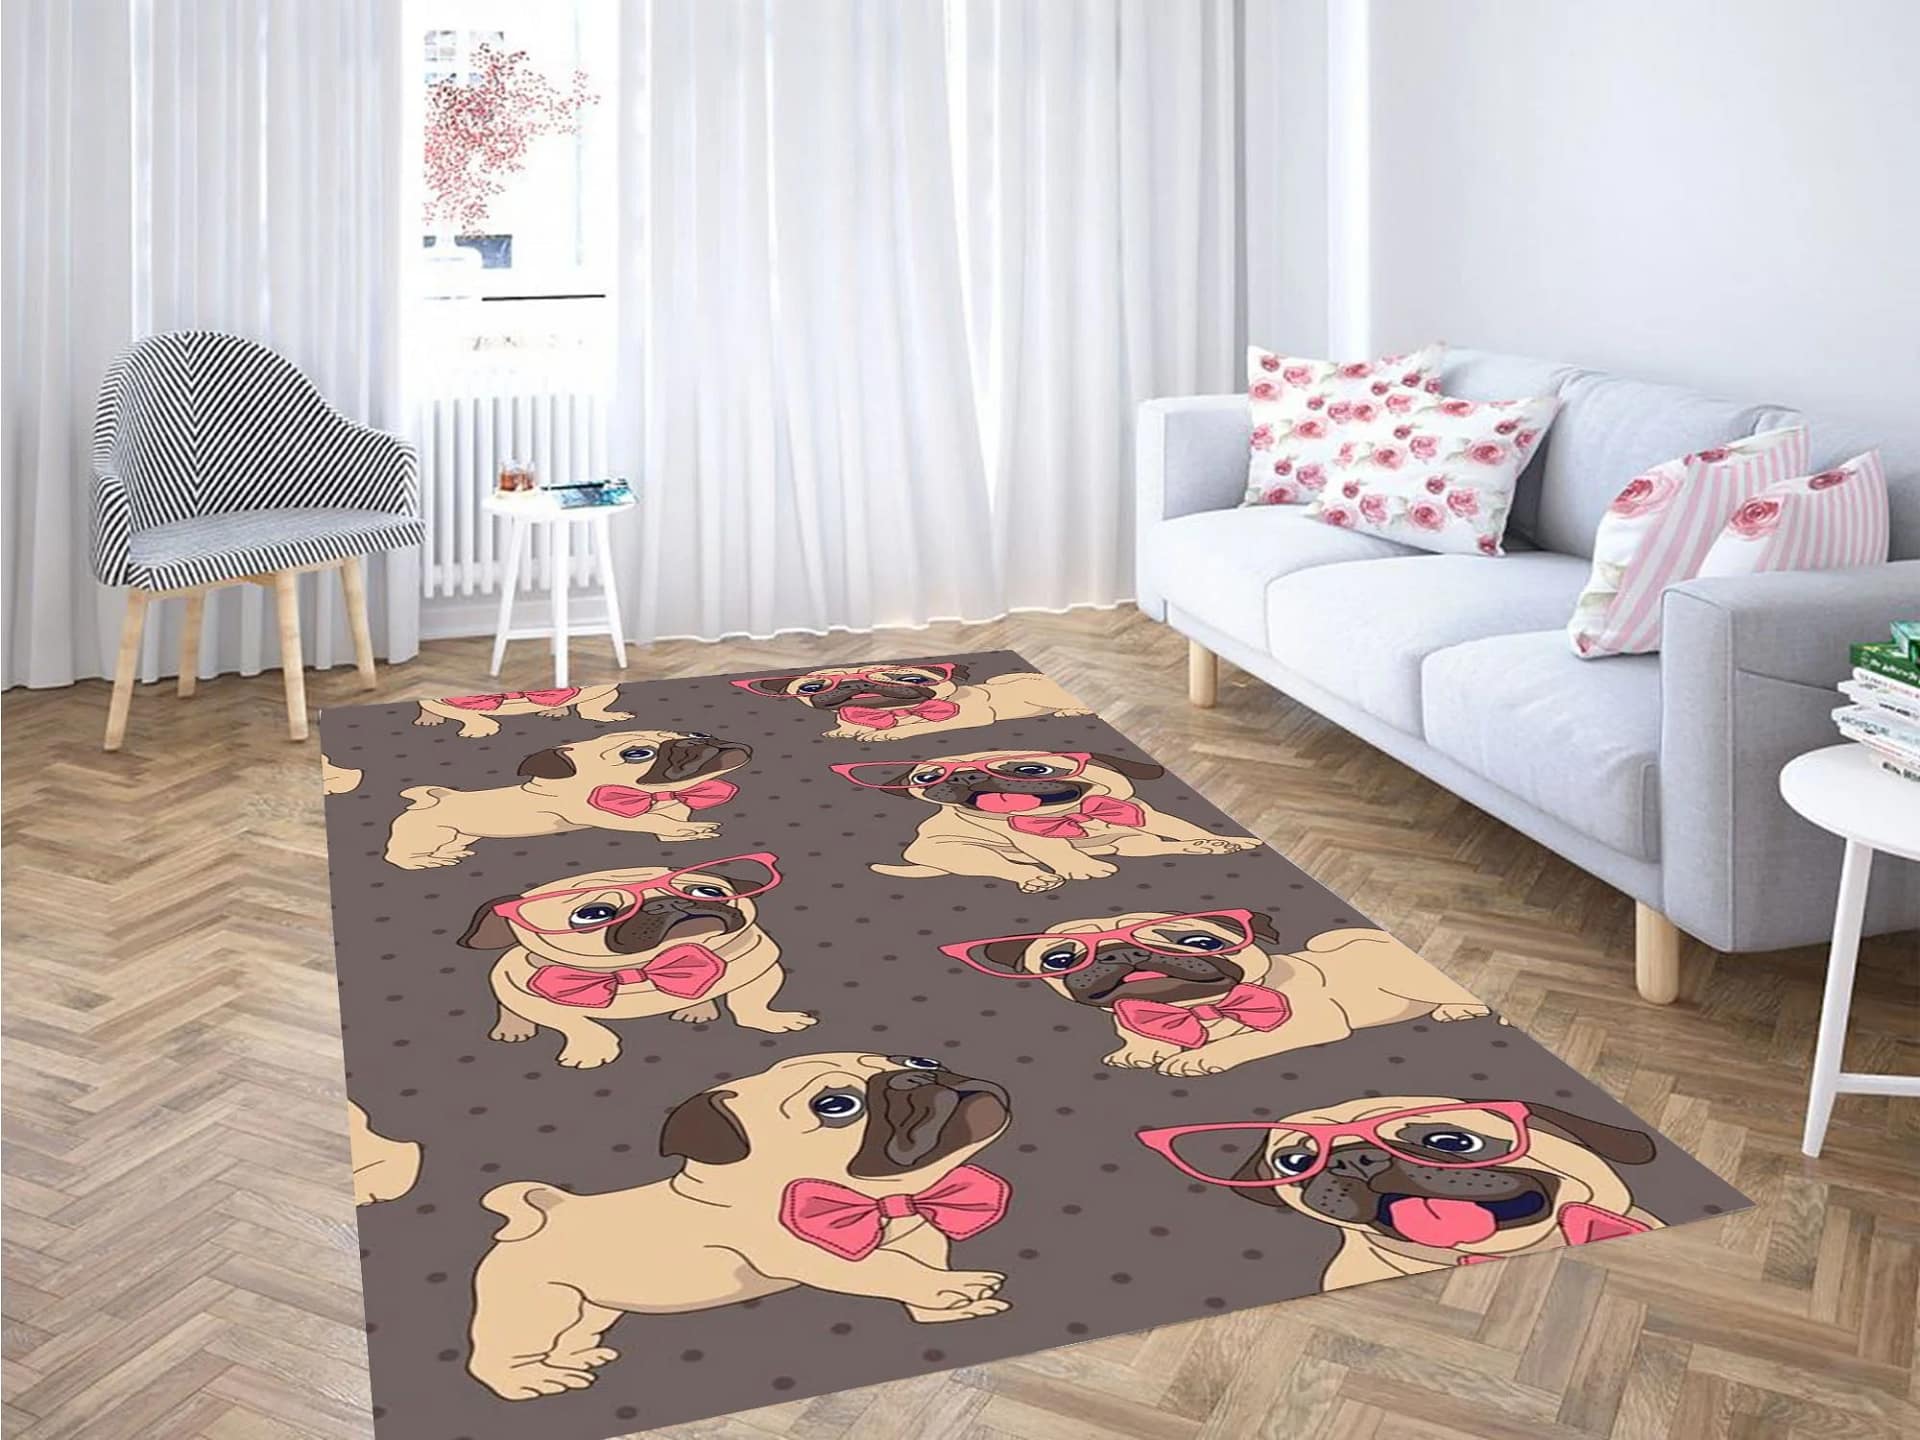 Pug Dog Wallpaper Carpet Rug